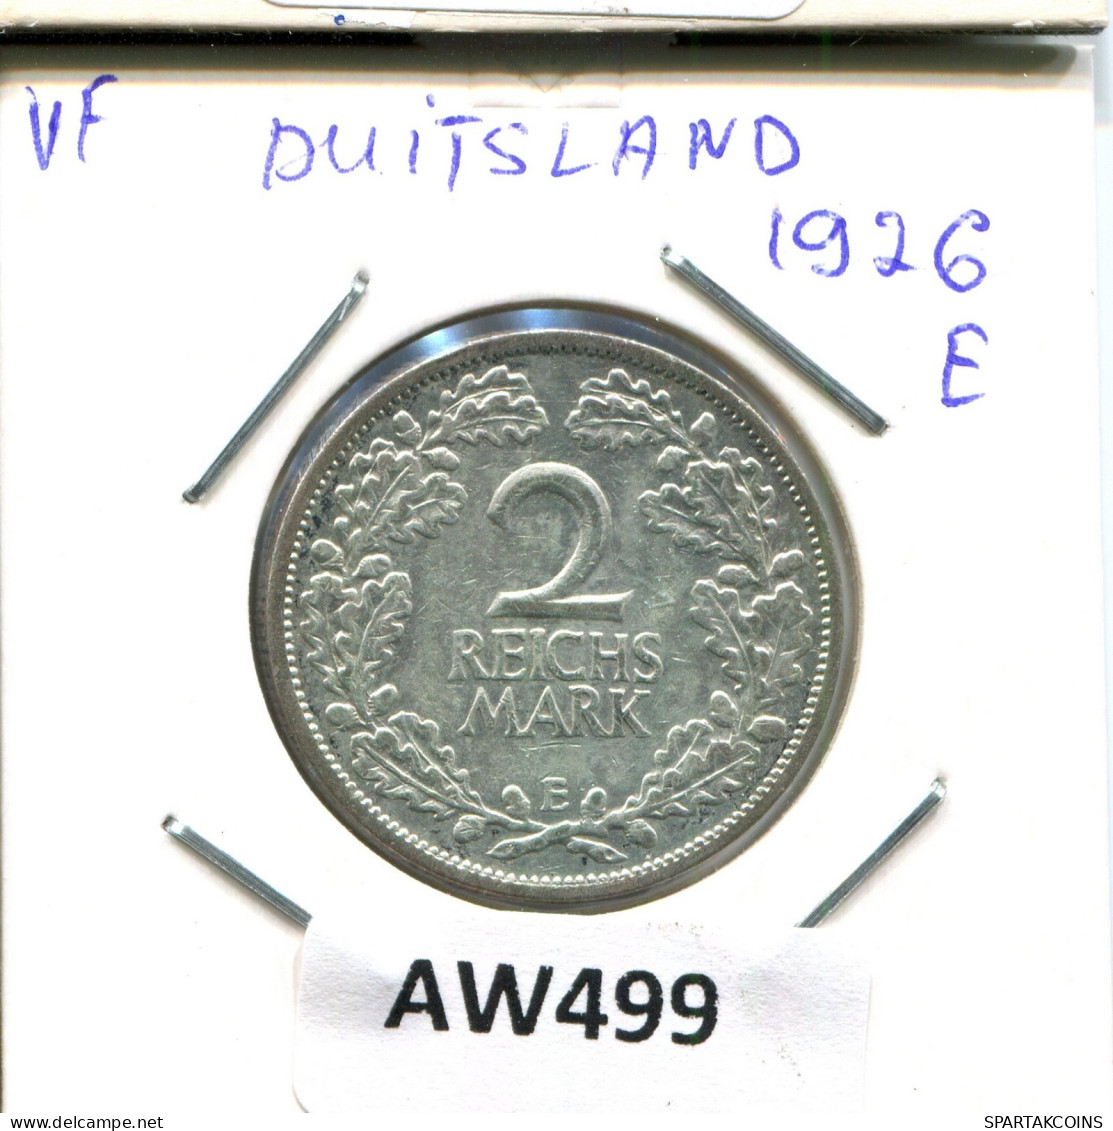 2 REISCHMARK 1926 E SILBER DEUTSCHLAND Münze GERMANY #AW499.D.A - 2 Reichsmark